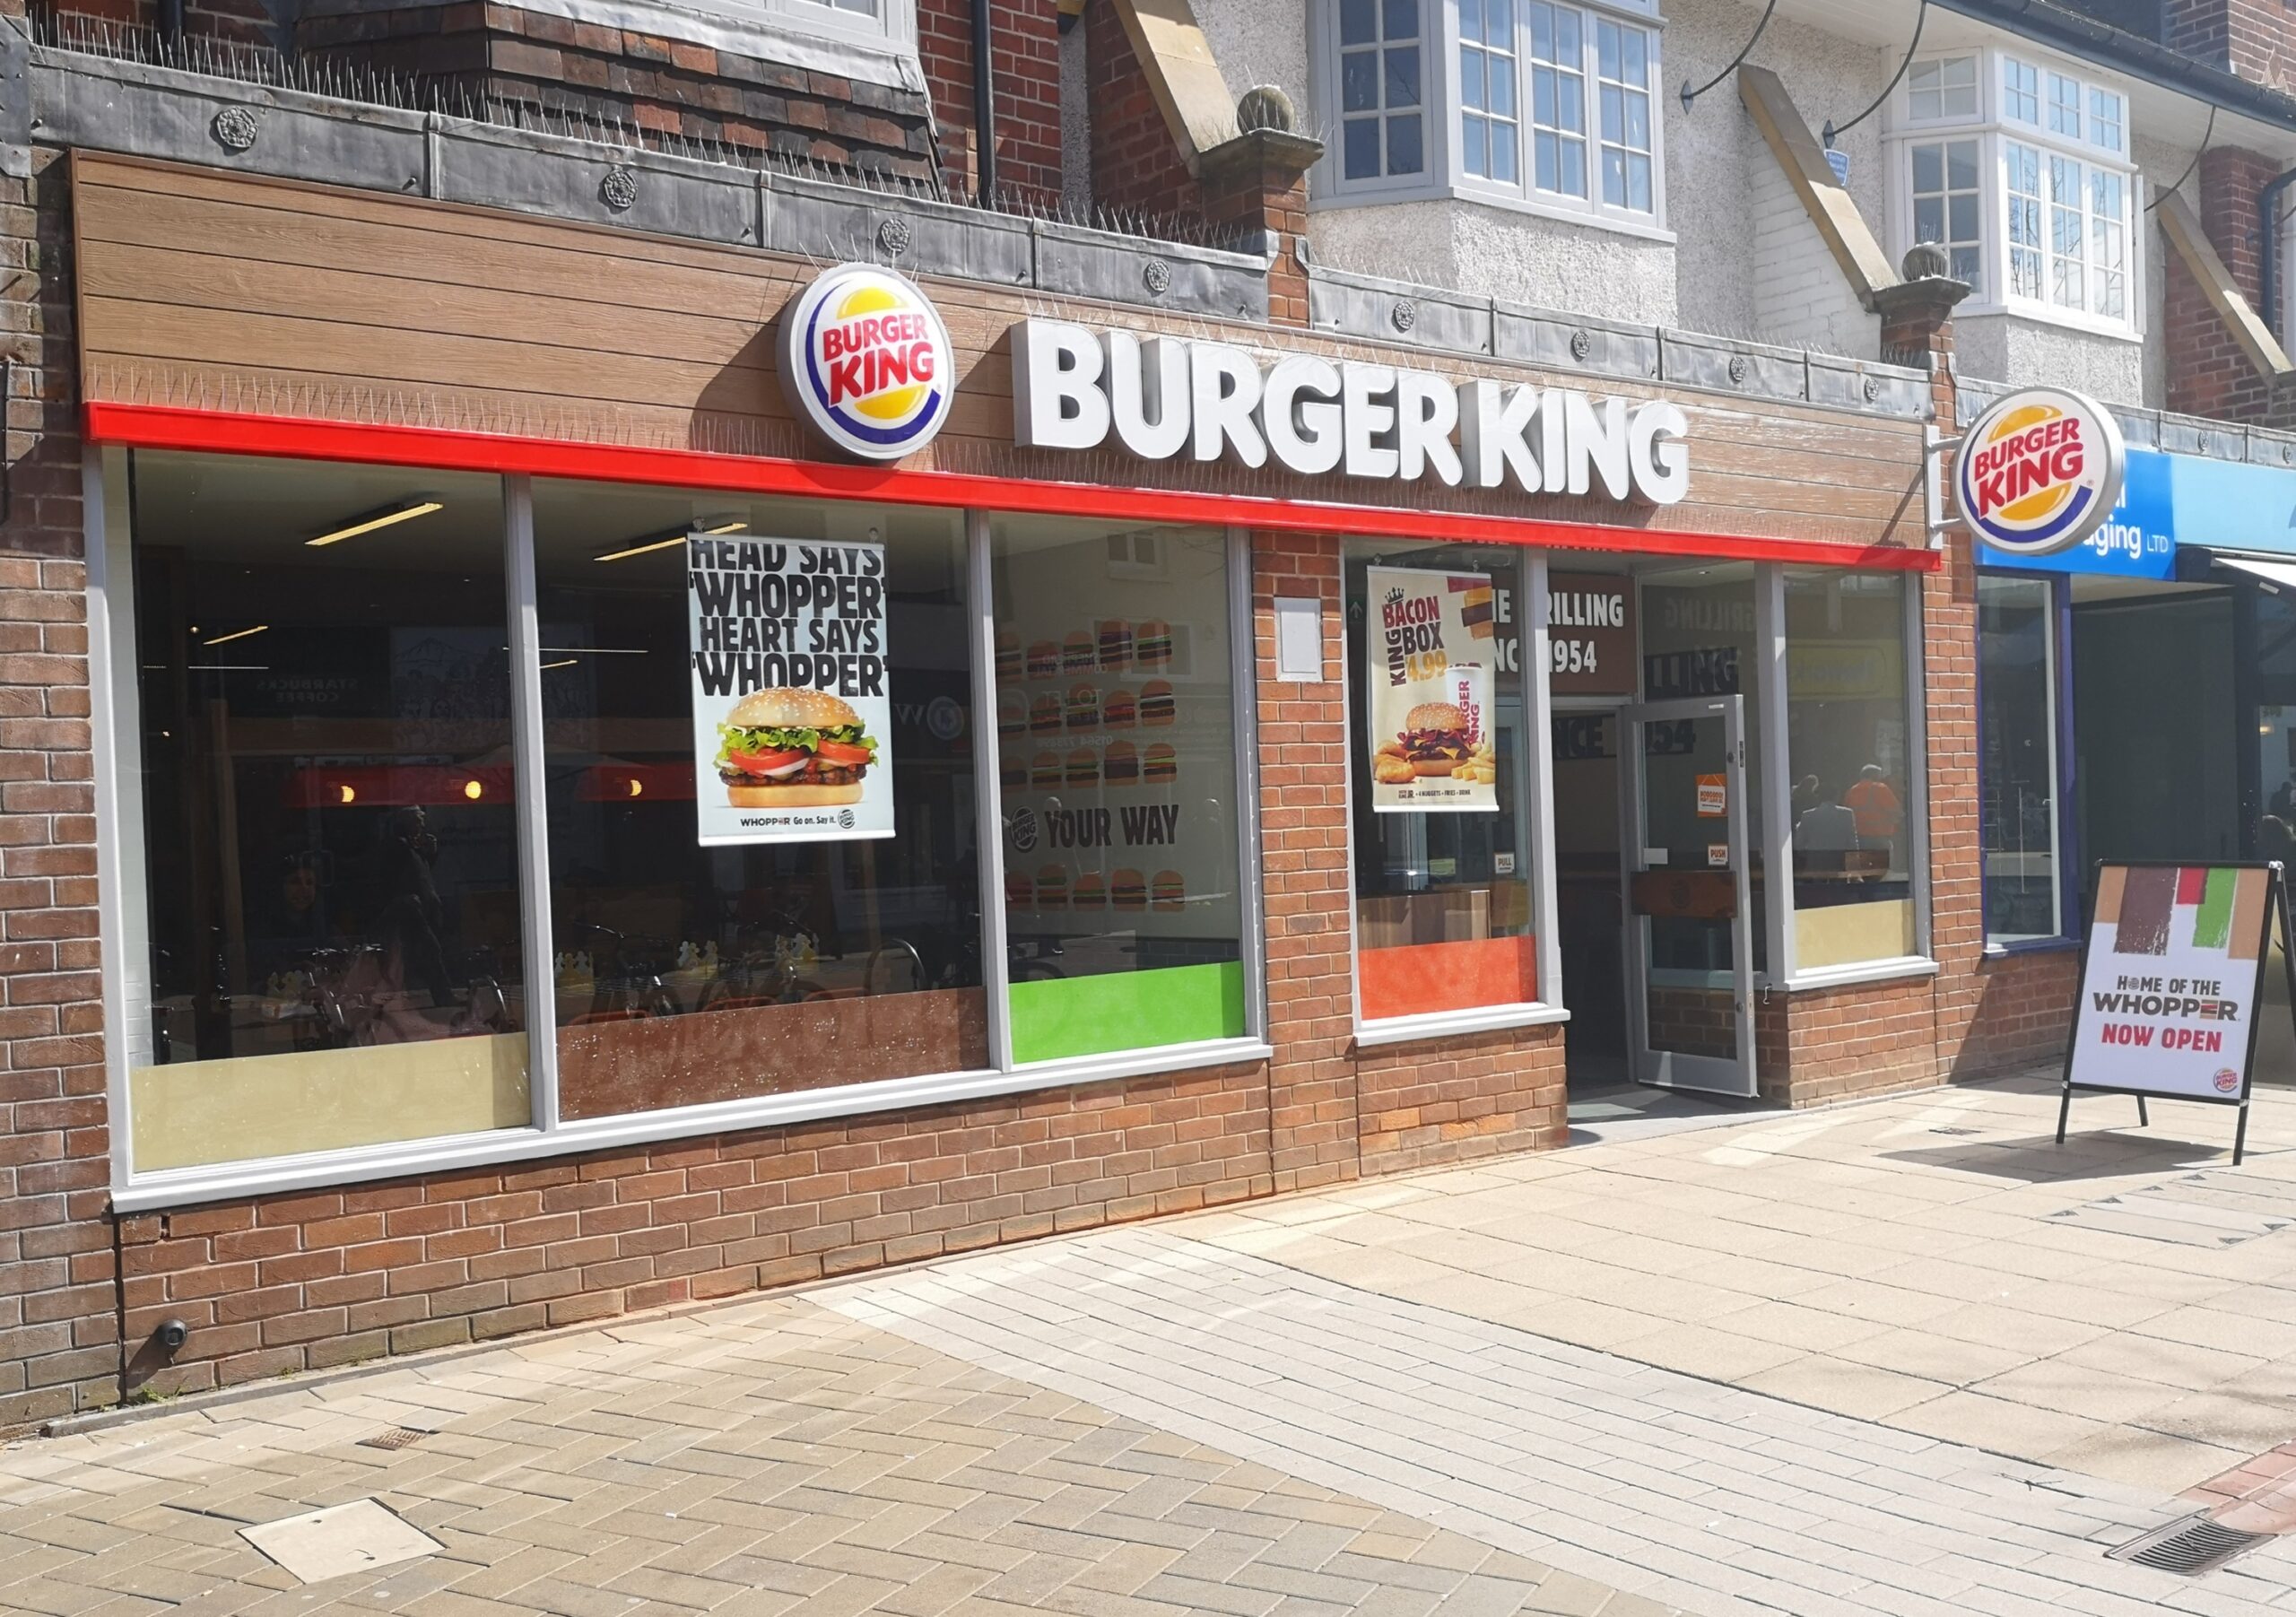 Burger King – 20% Discount